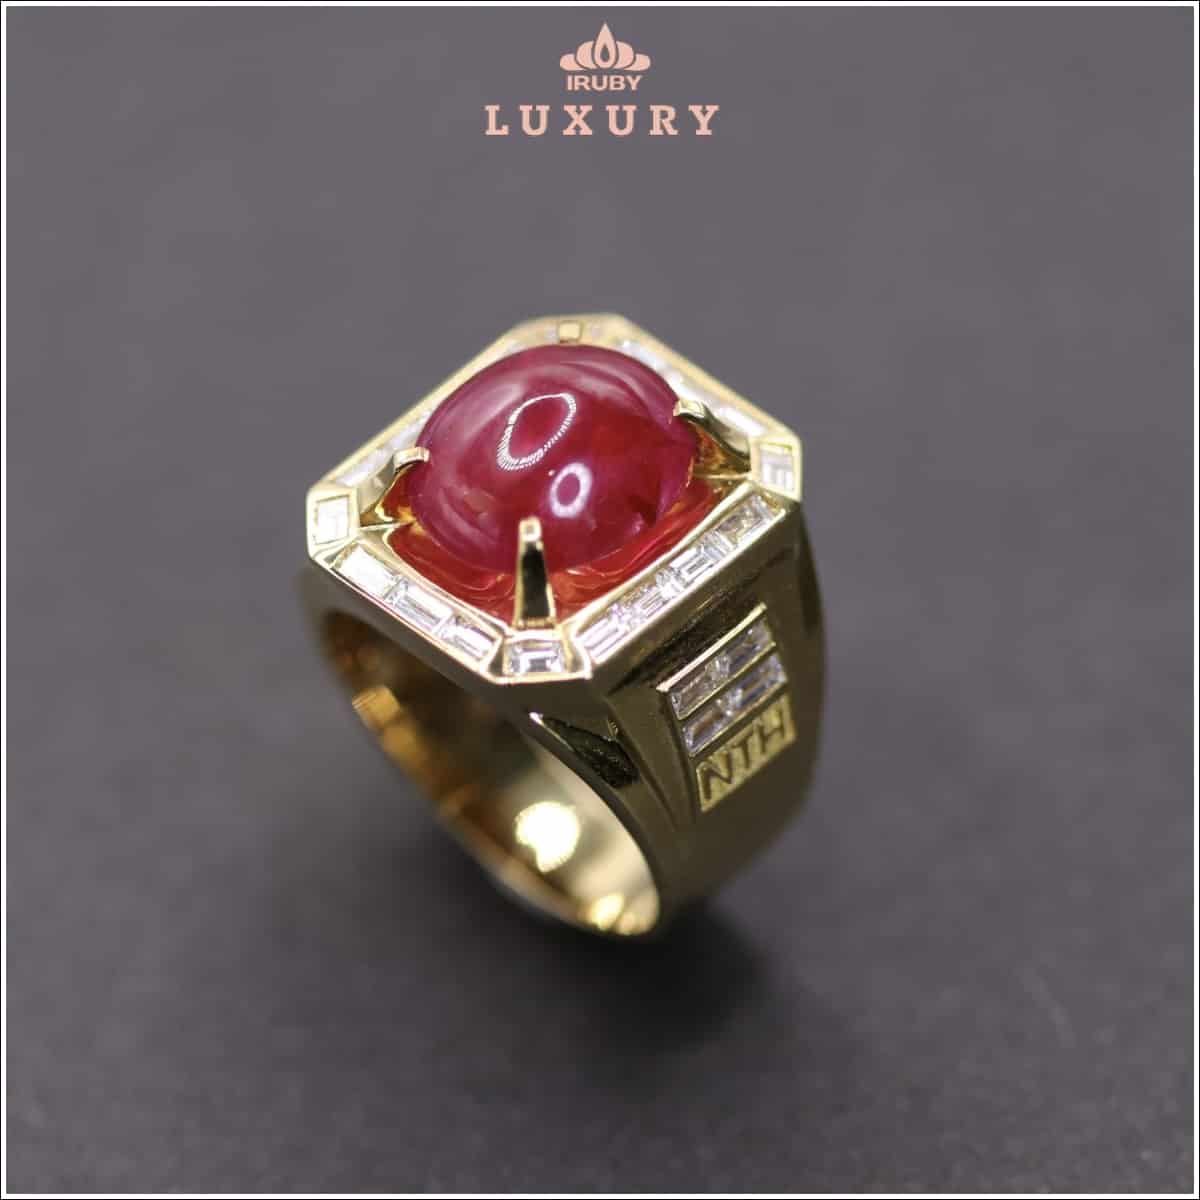 Nhẫn Ruby Luxury mẫu Chủ Tịch - IRRB 237920 hình ảnh 4